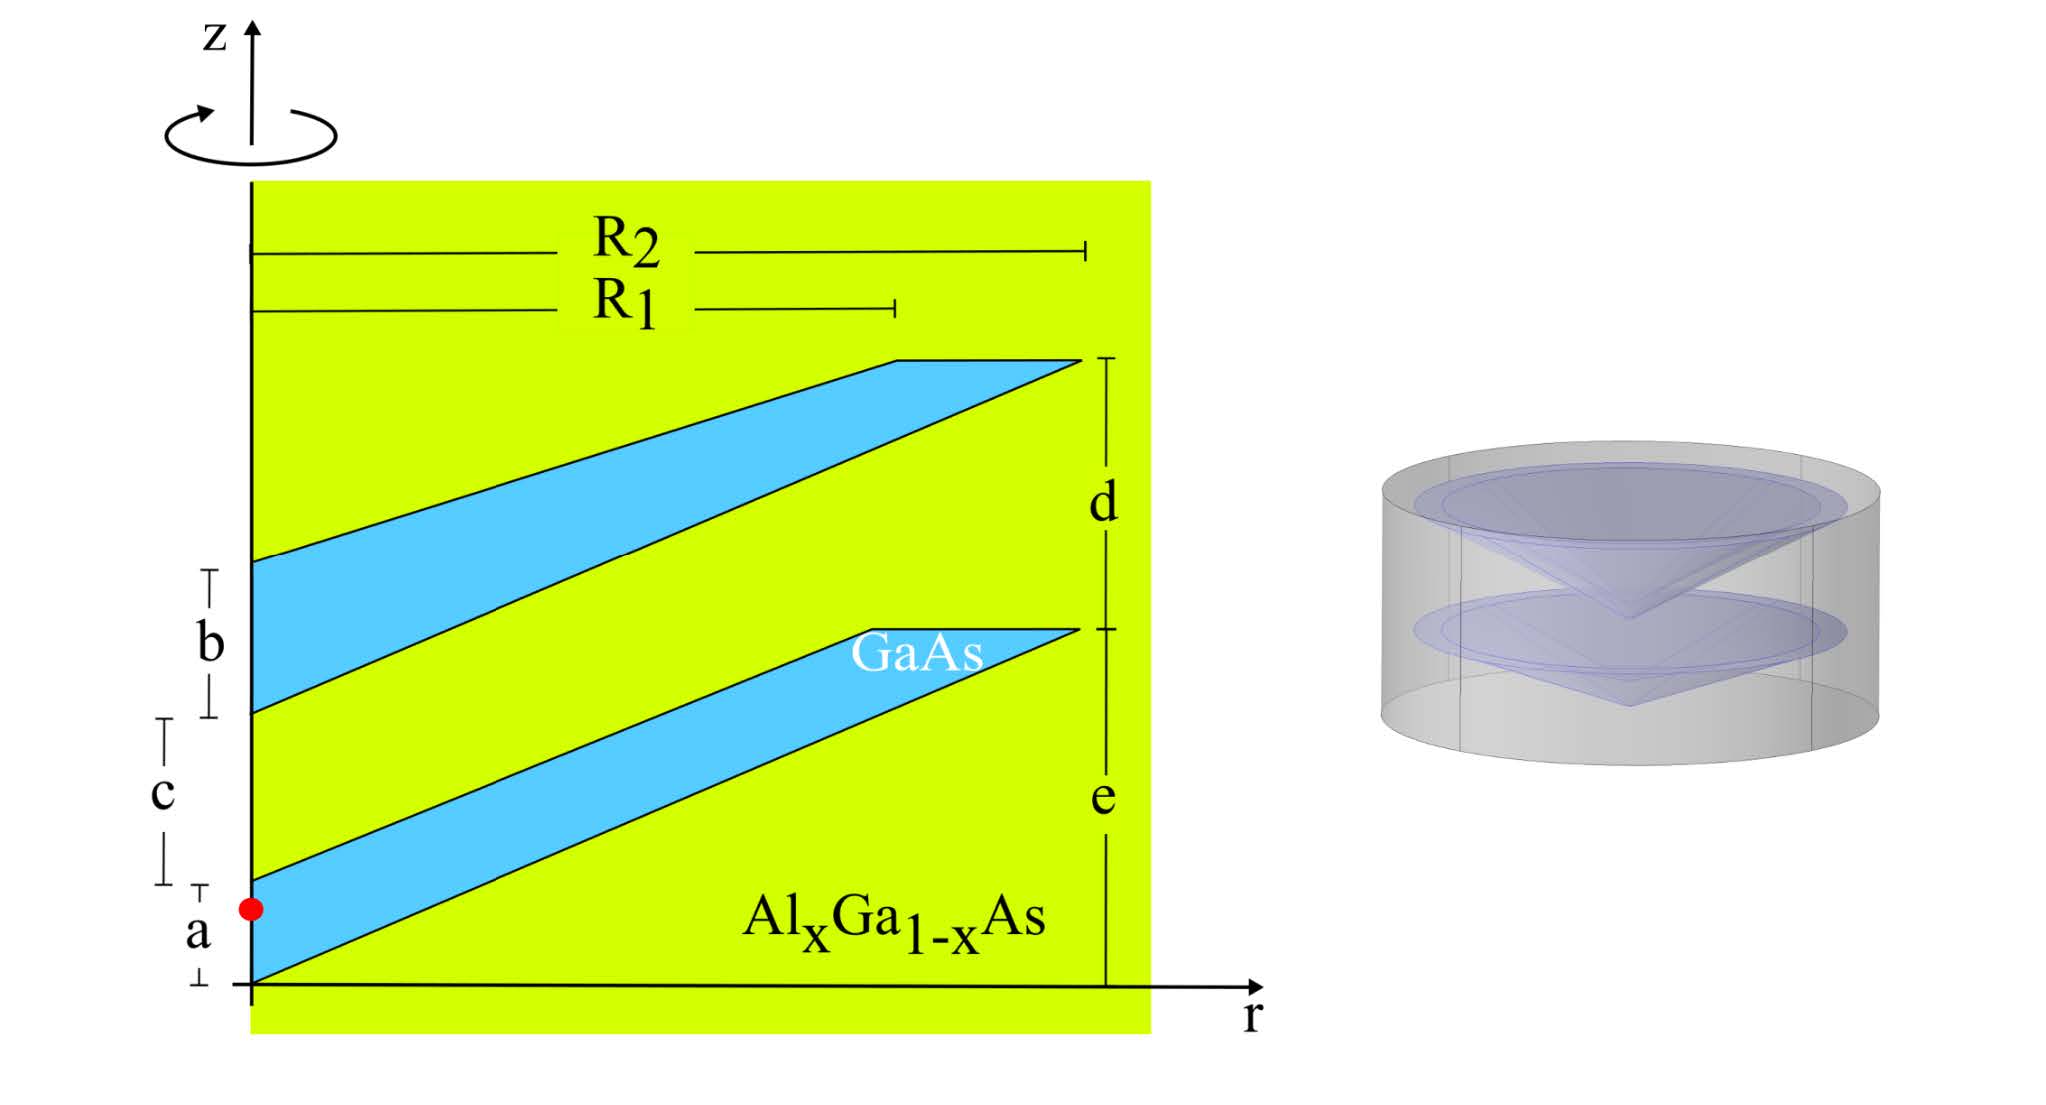 Punto cuántico cónico doble de GaAs rodeado de Al0,3Ga0,7As de la izquierda con dimensiones: a = 6,5 nm, b variable de 4 nm a 10 nm, c = 3,45 nm, d = 20 nm, e = 30 nm, R1 = 49, 4 nm, R2 = 56,5 nm y con límites frontera de 65 nm de ancho por 60 nm de alto. El punto rojo representa la posición de la impureza en z = 4 nm. Al lado derecho se representa la figura rotada de altura 60 nm y radio 65 nm.